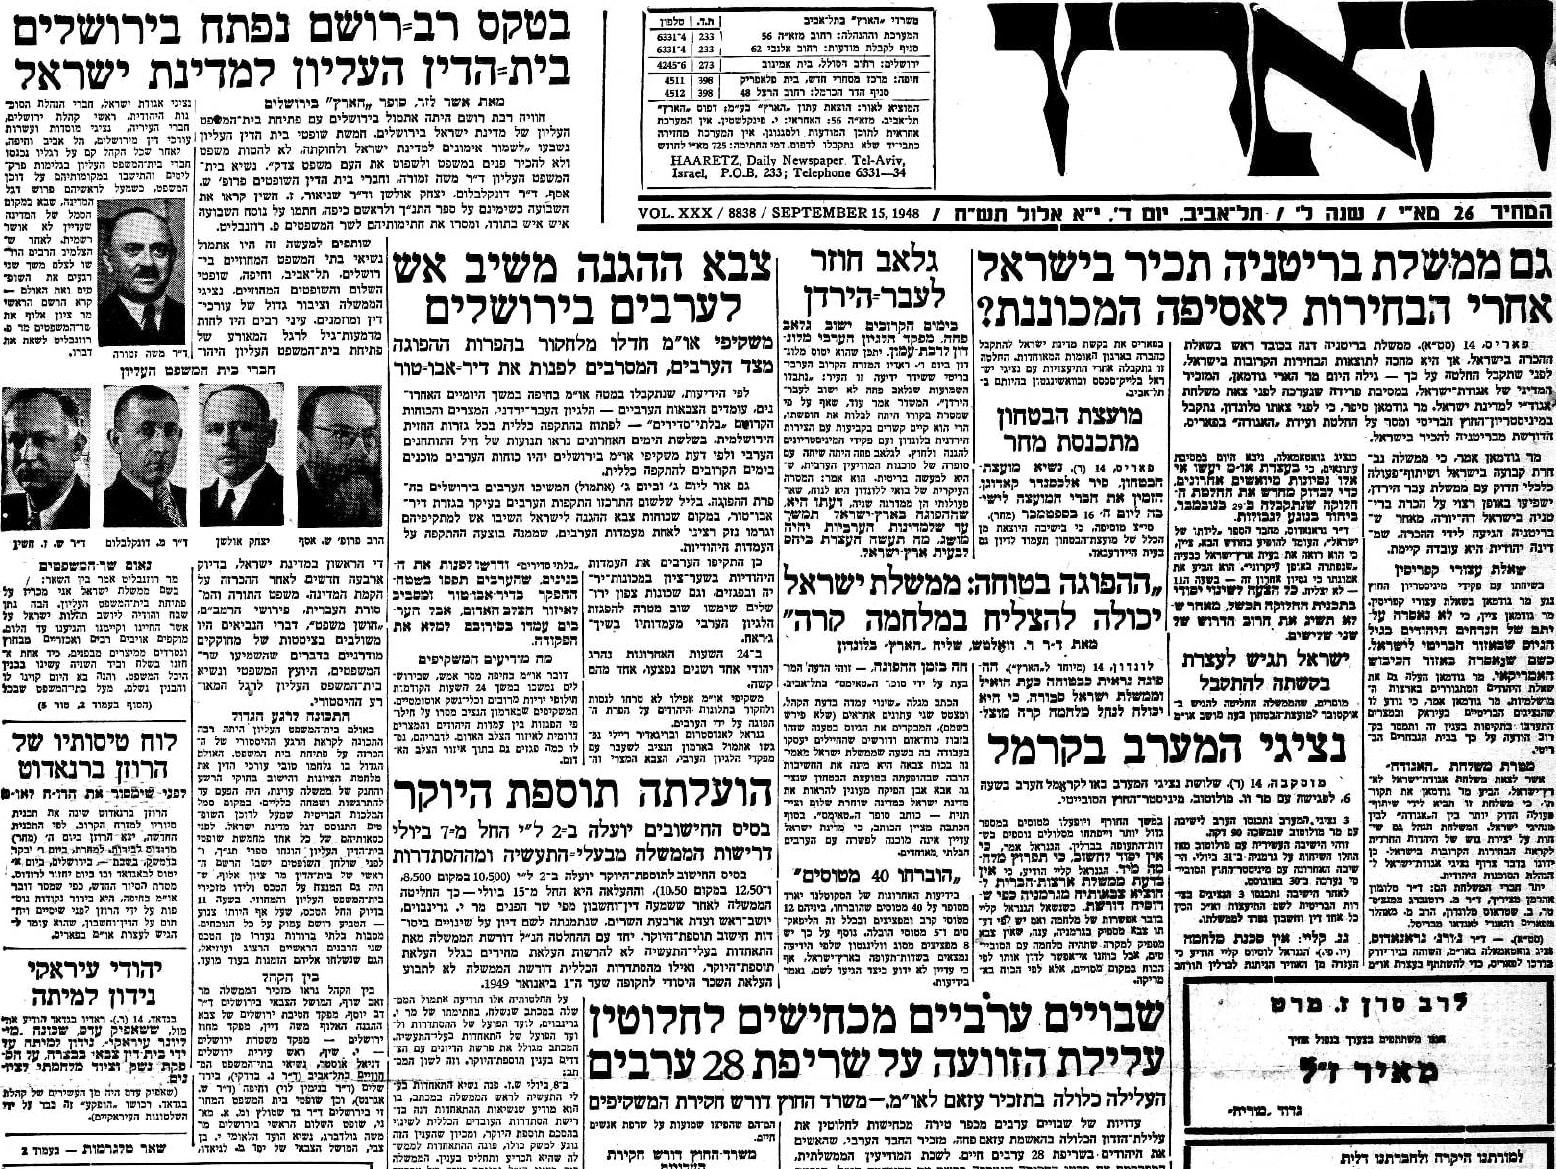 הידיעה בעמוד הראשי של &quot;הארץ&quot; על פתיחת &quot;בית הדין העליון למדינת ישראל&quot;, 15 בספטמבר 1948